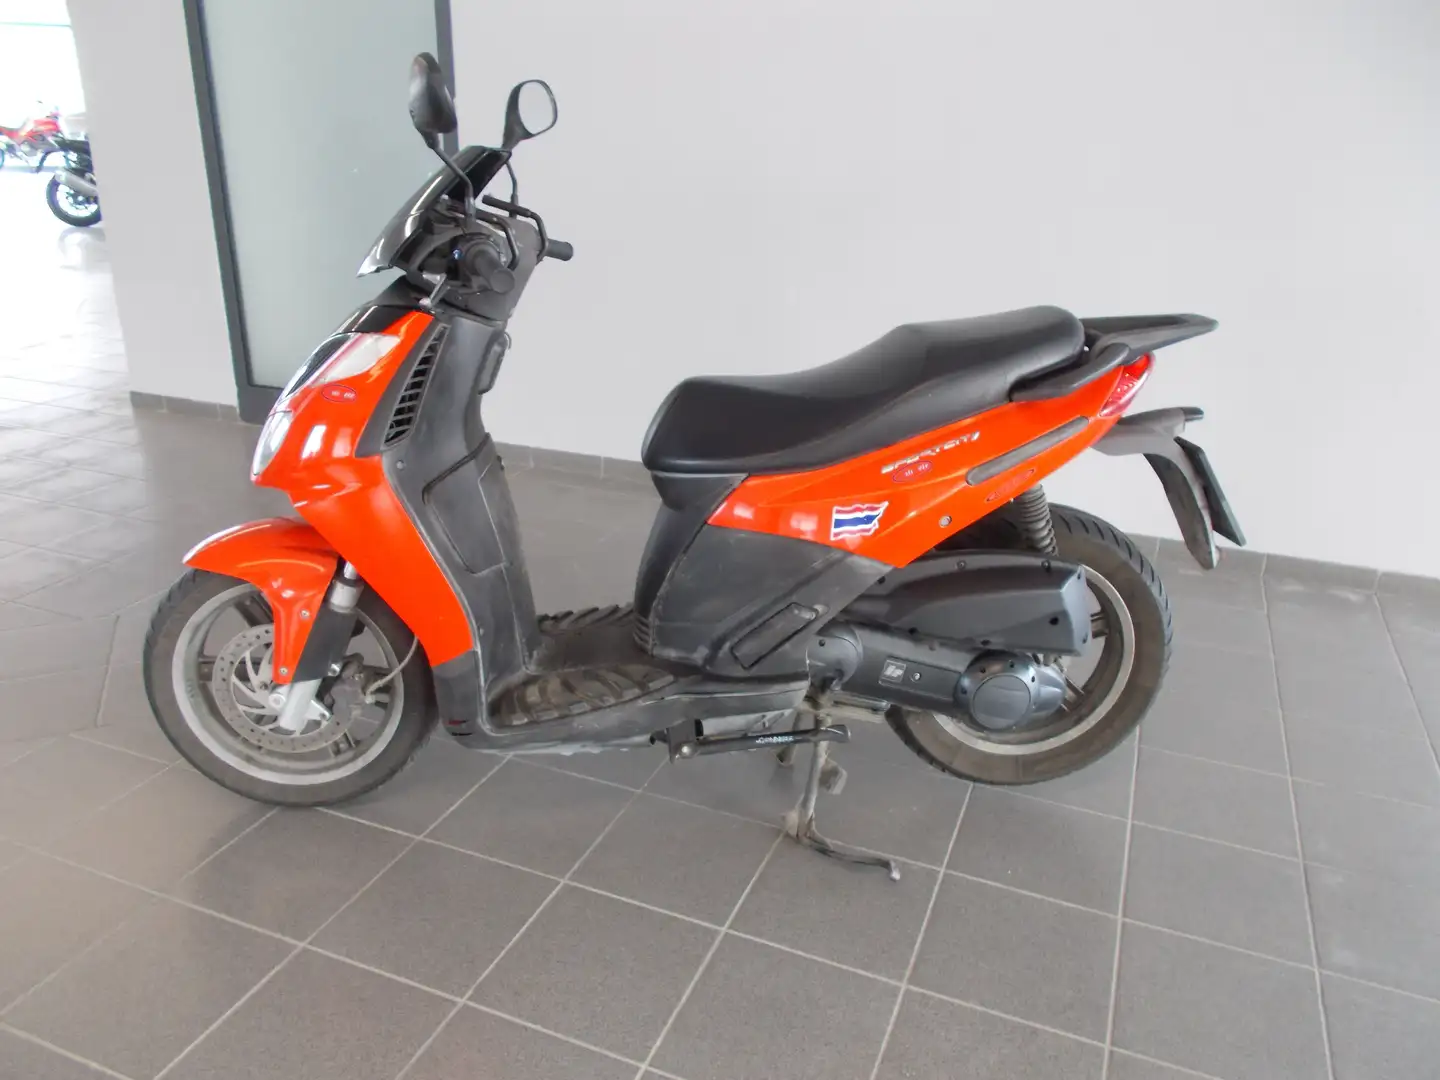 usato Aprilia Sportcity 200 Scooter a Alba - Cuneo - Cn per € 700,-